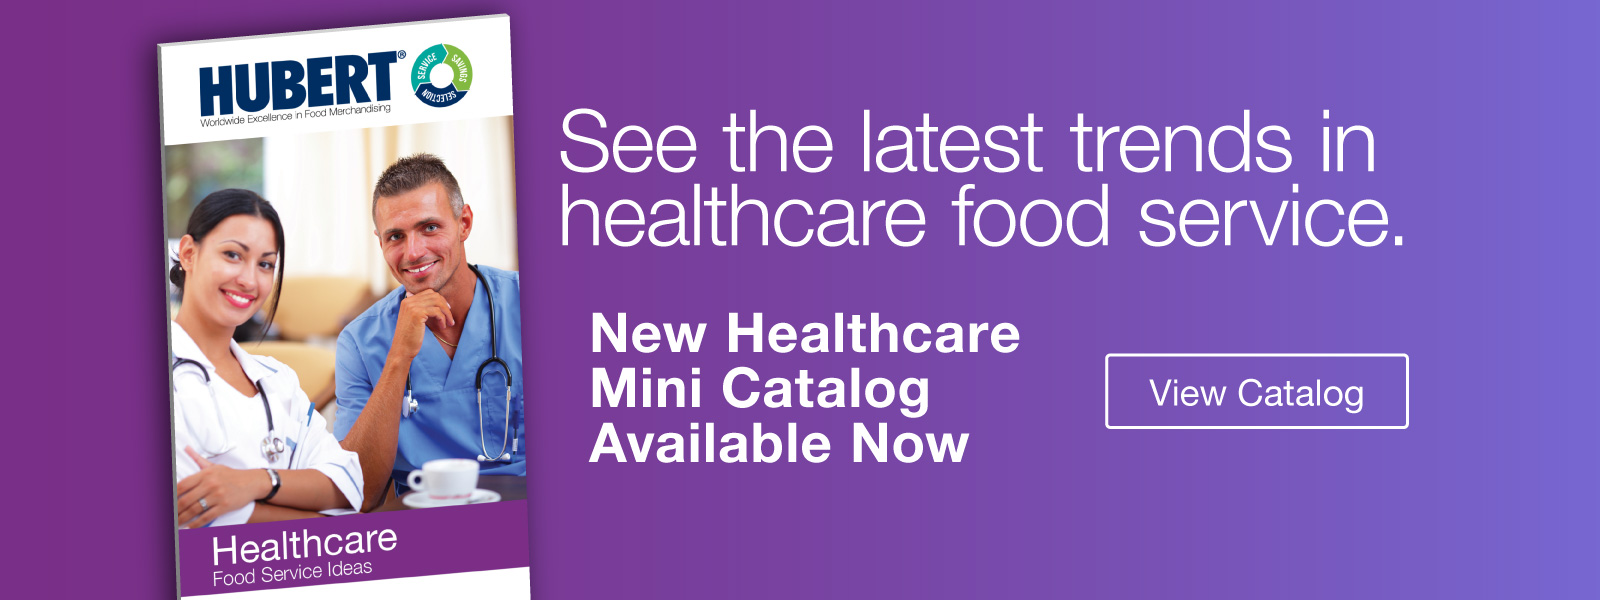 Healthcare Mini Catalog